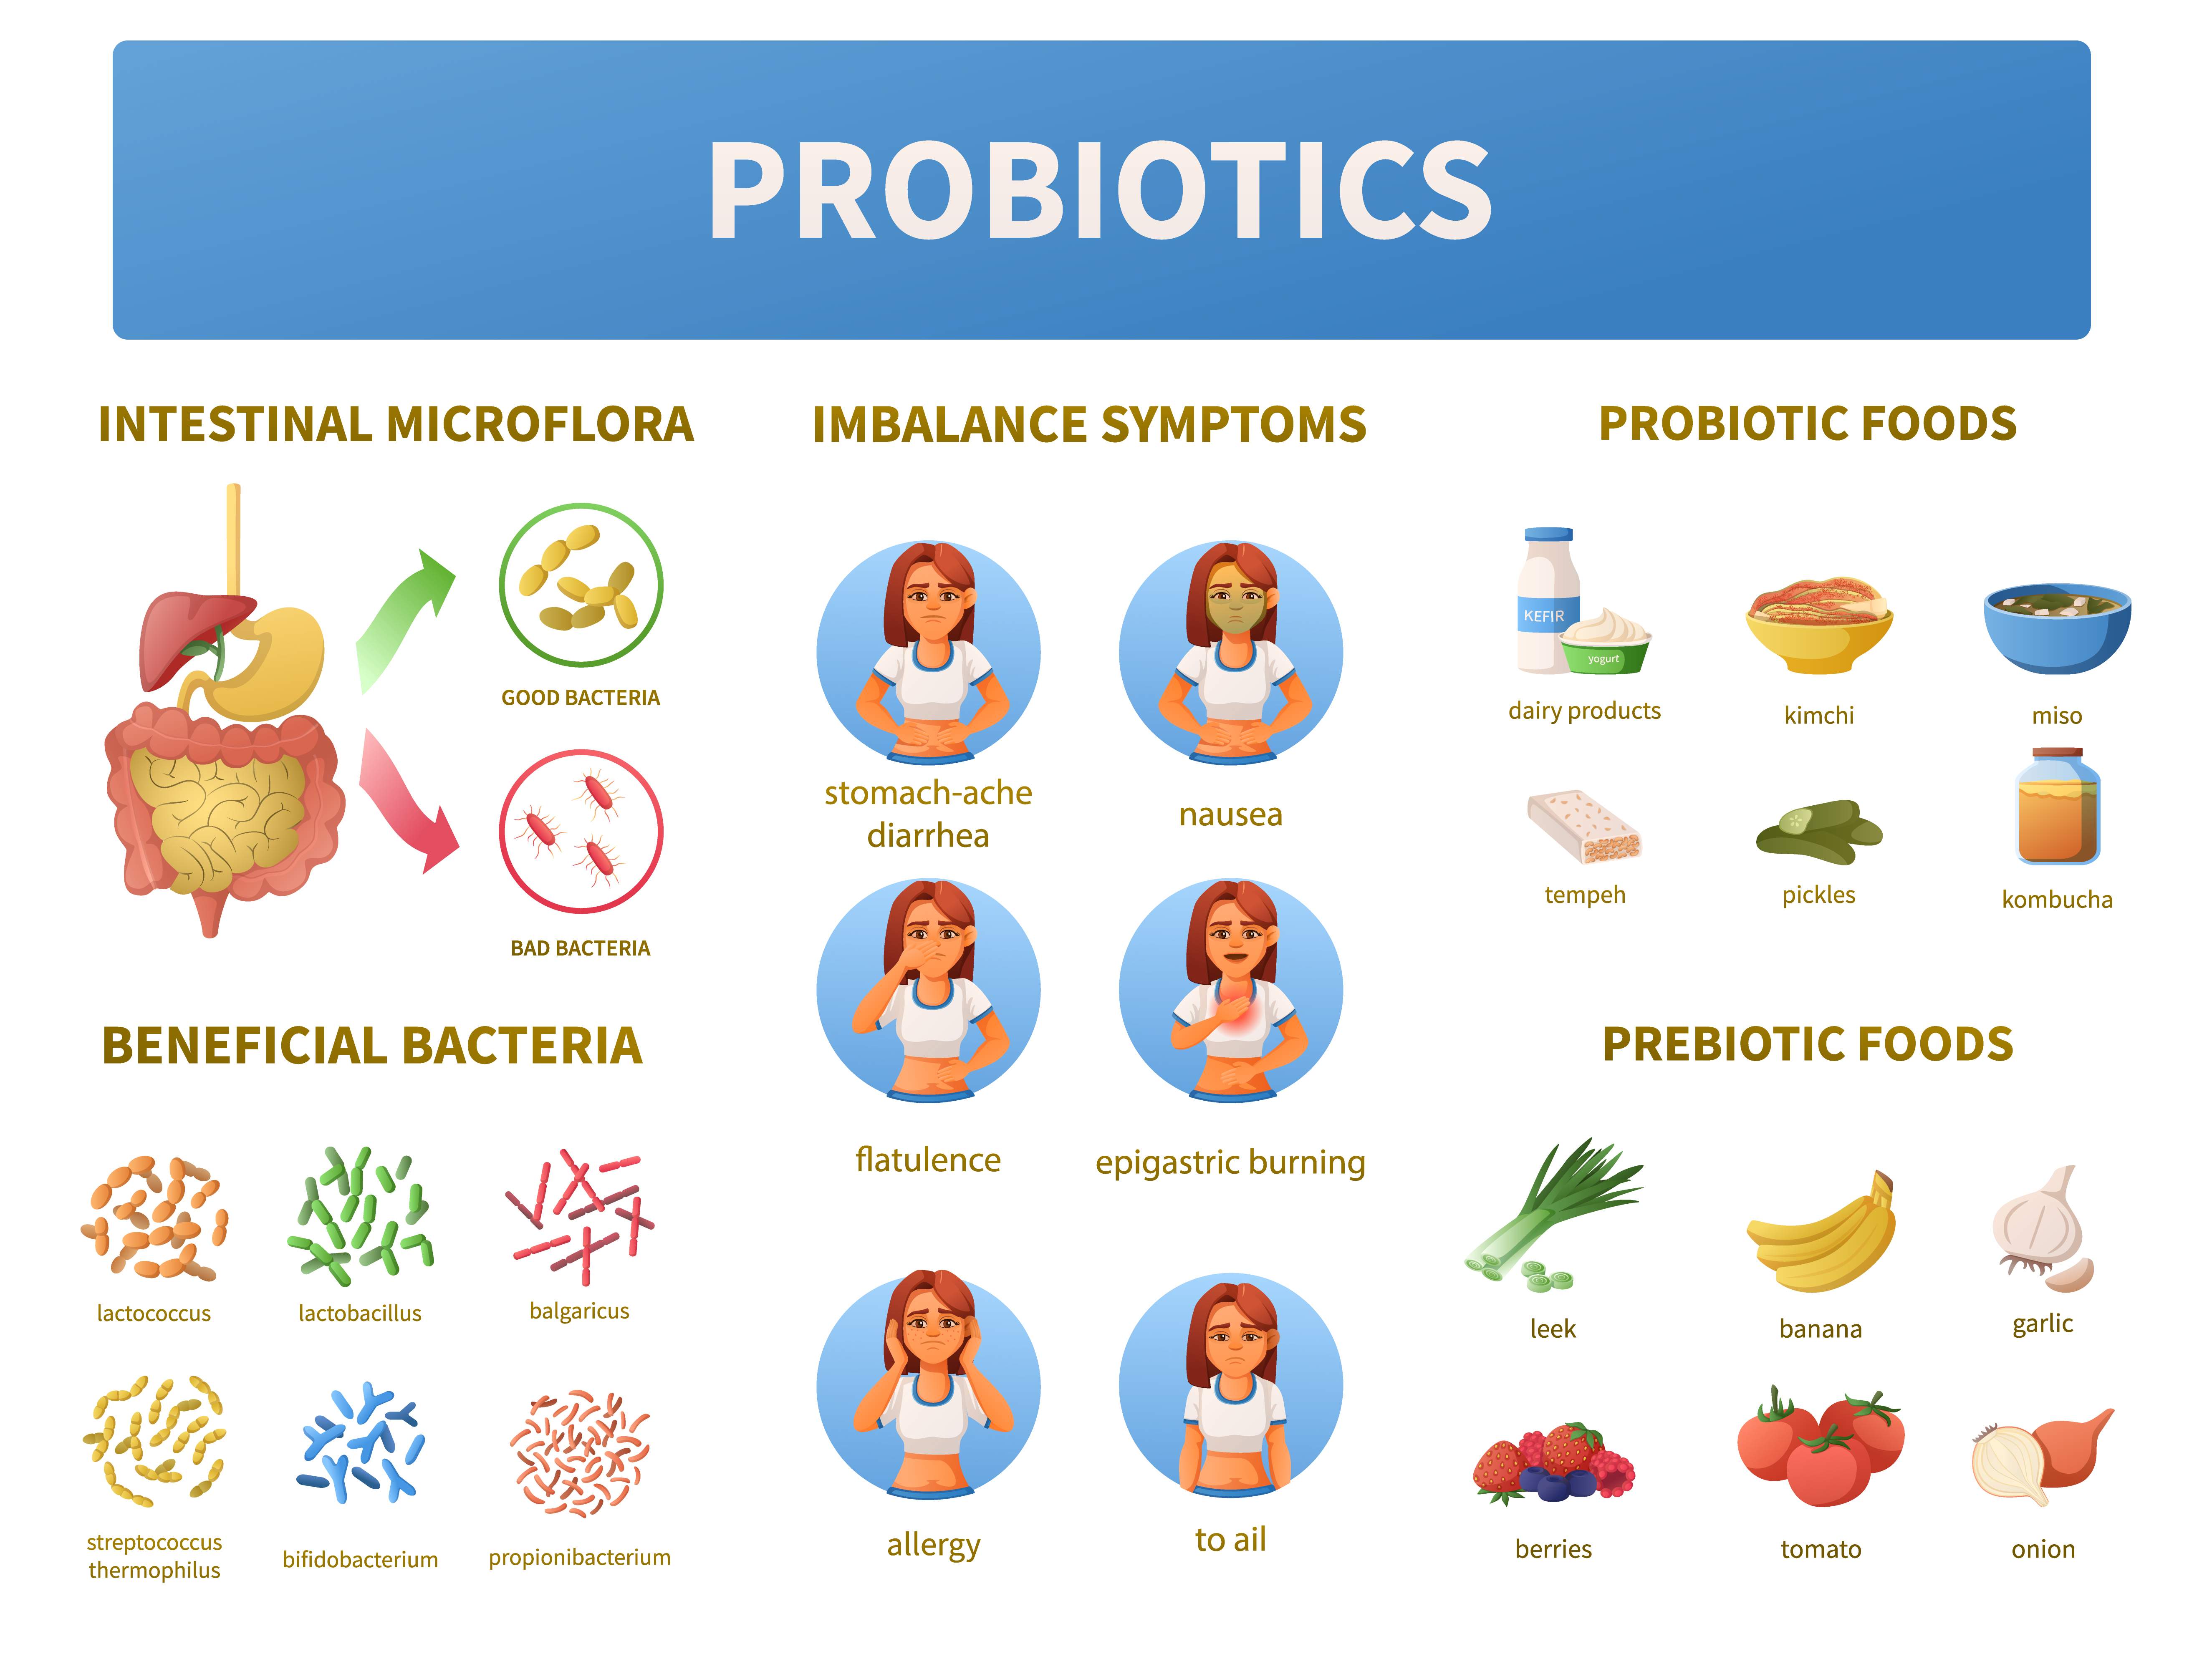 biodiversità-ambientale-microbiota-intestinale-alimentazione-stress-disbiosi-farmaci-ormoni-fibre-eubiosi-probiotici-prebiotici-attività-fisica-stile-di-vita-sano